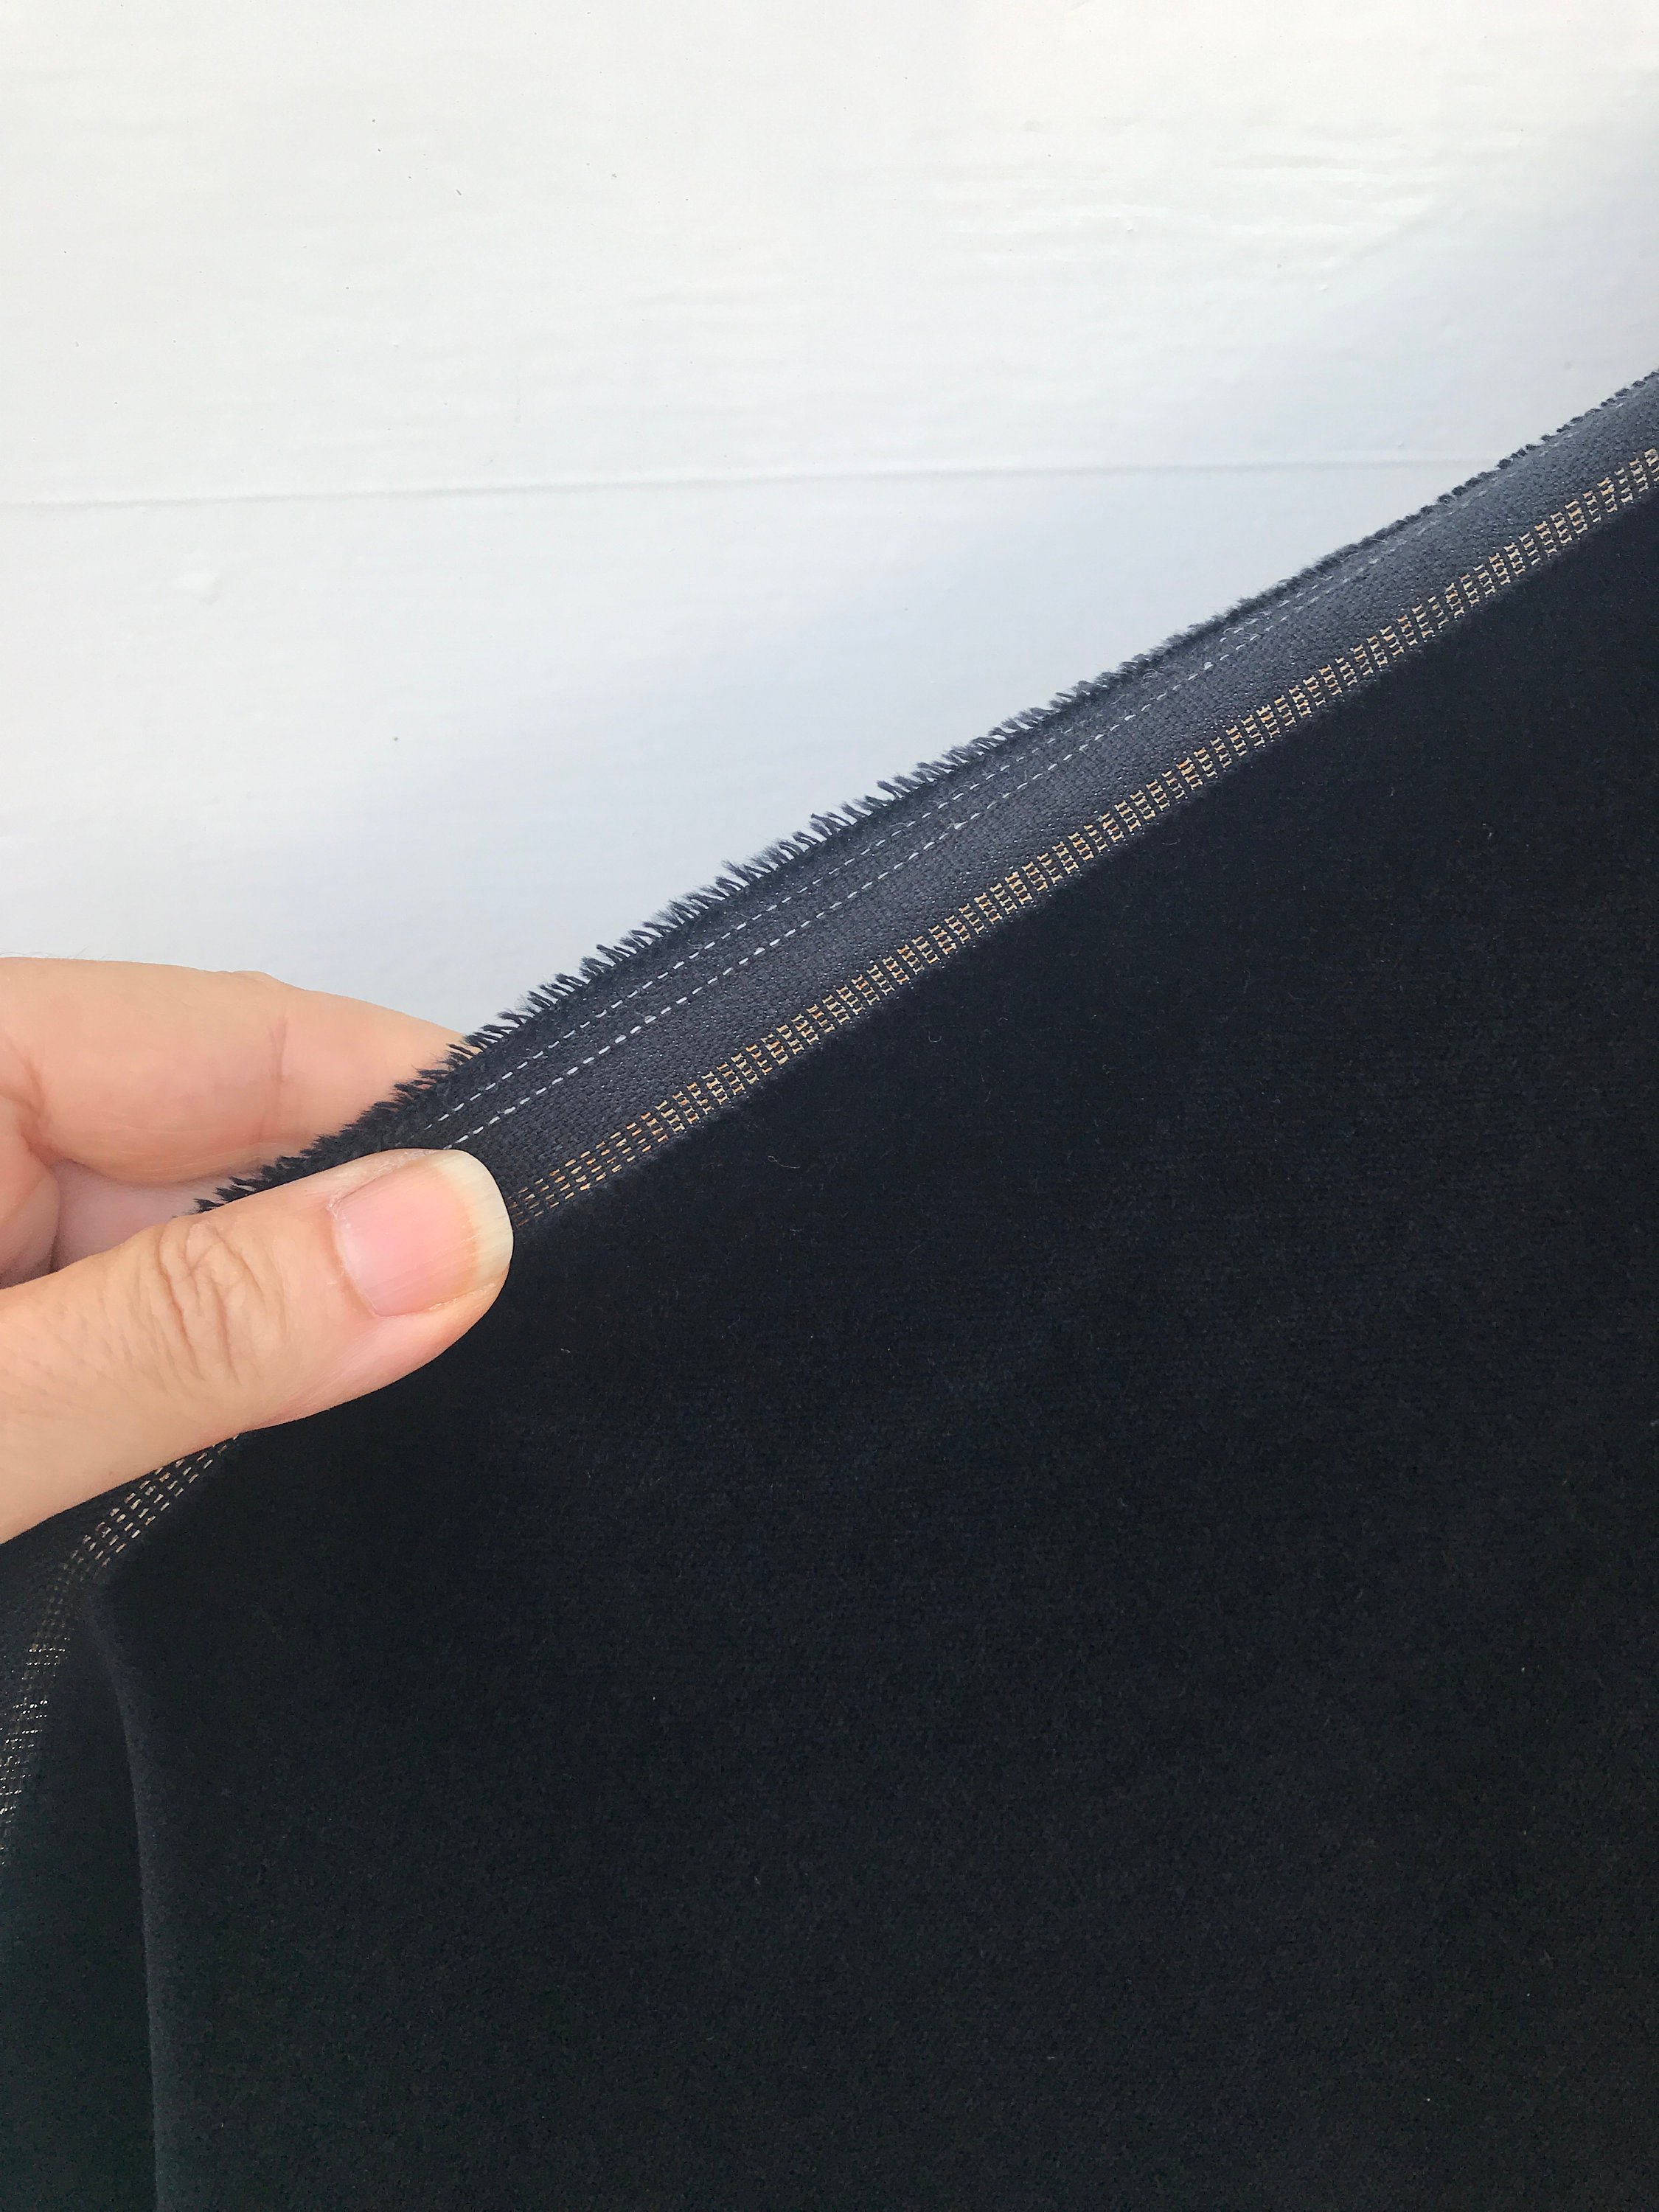 Black cotton velvet fabric